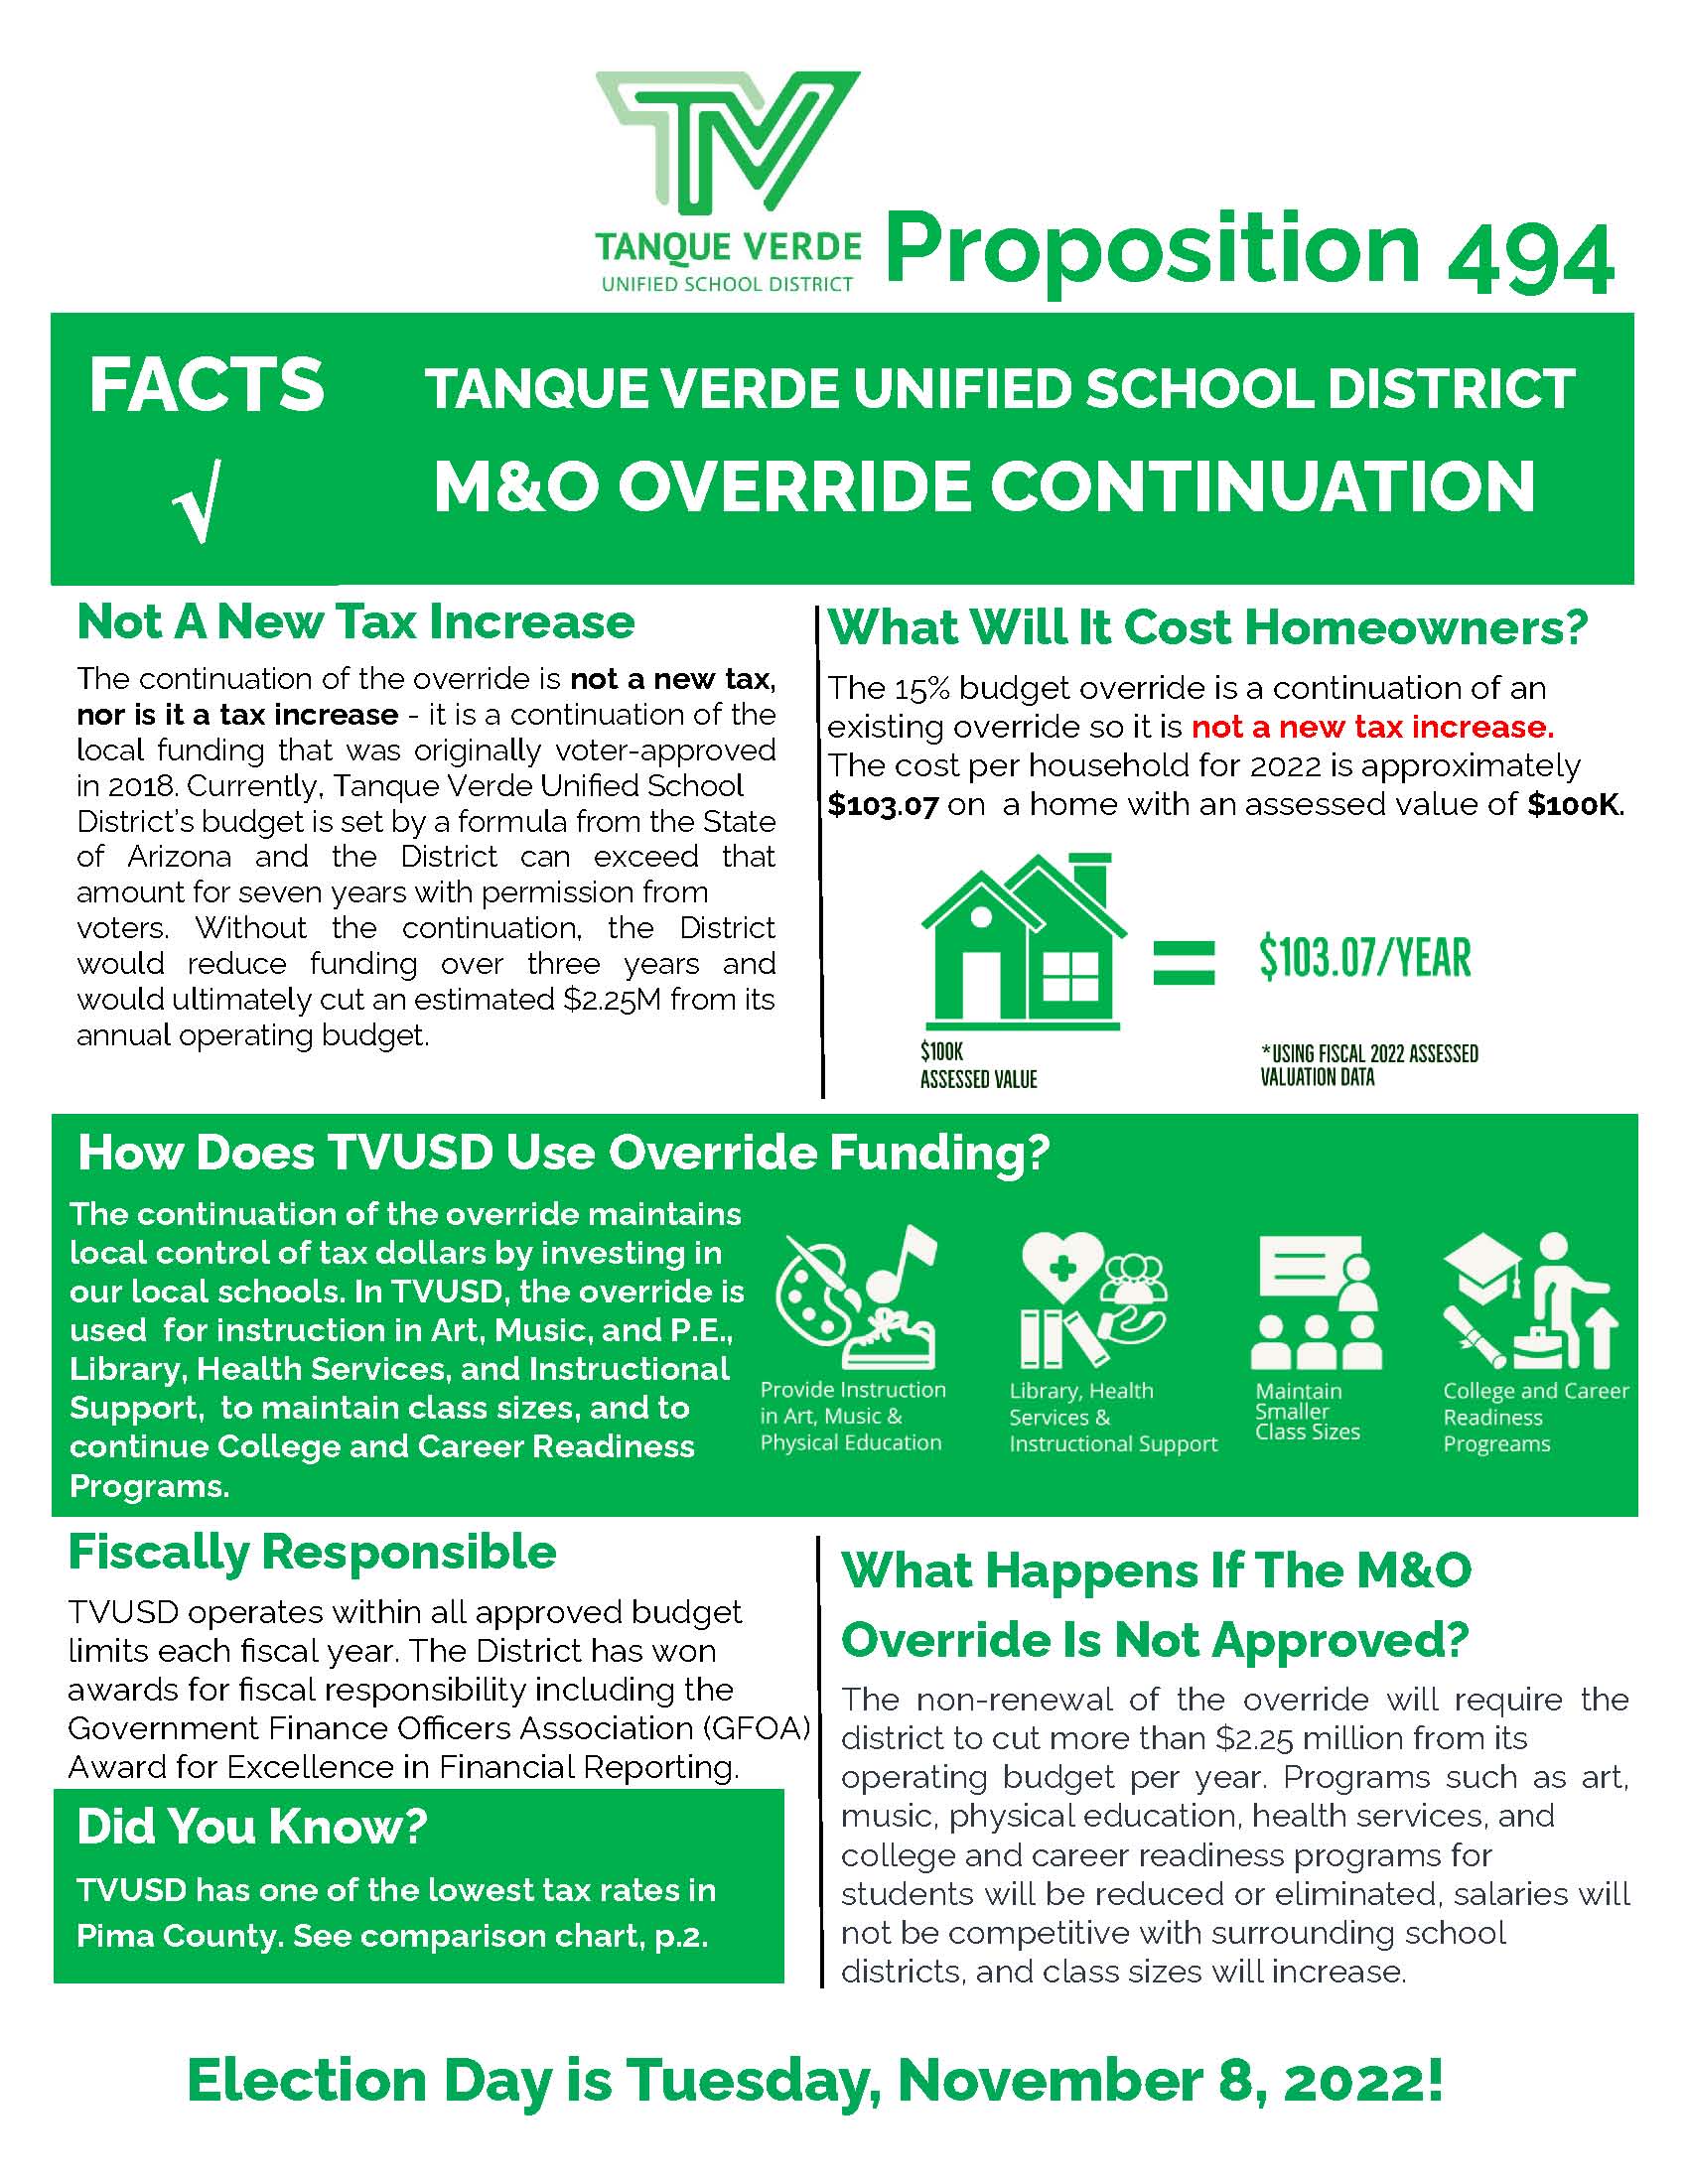 M&O Override Fact Sheet